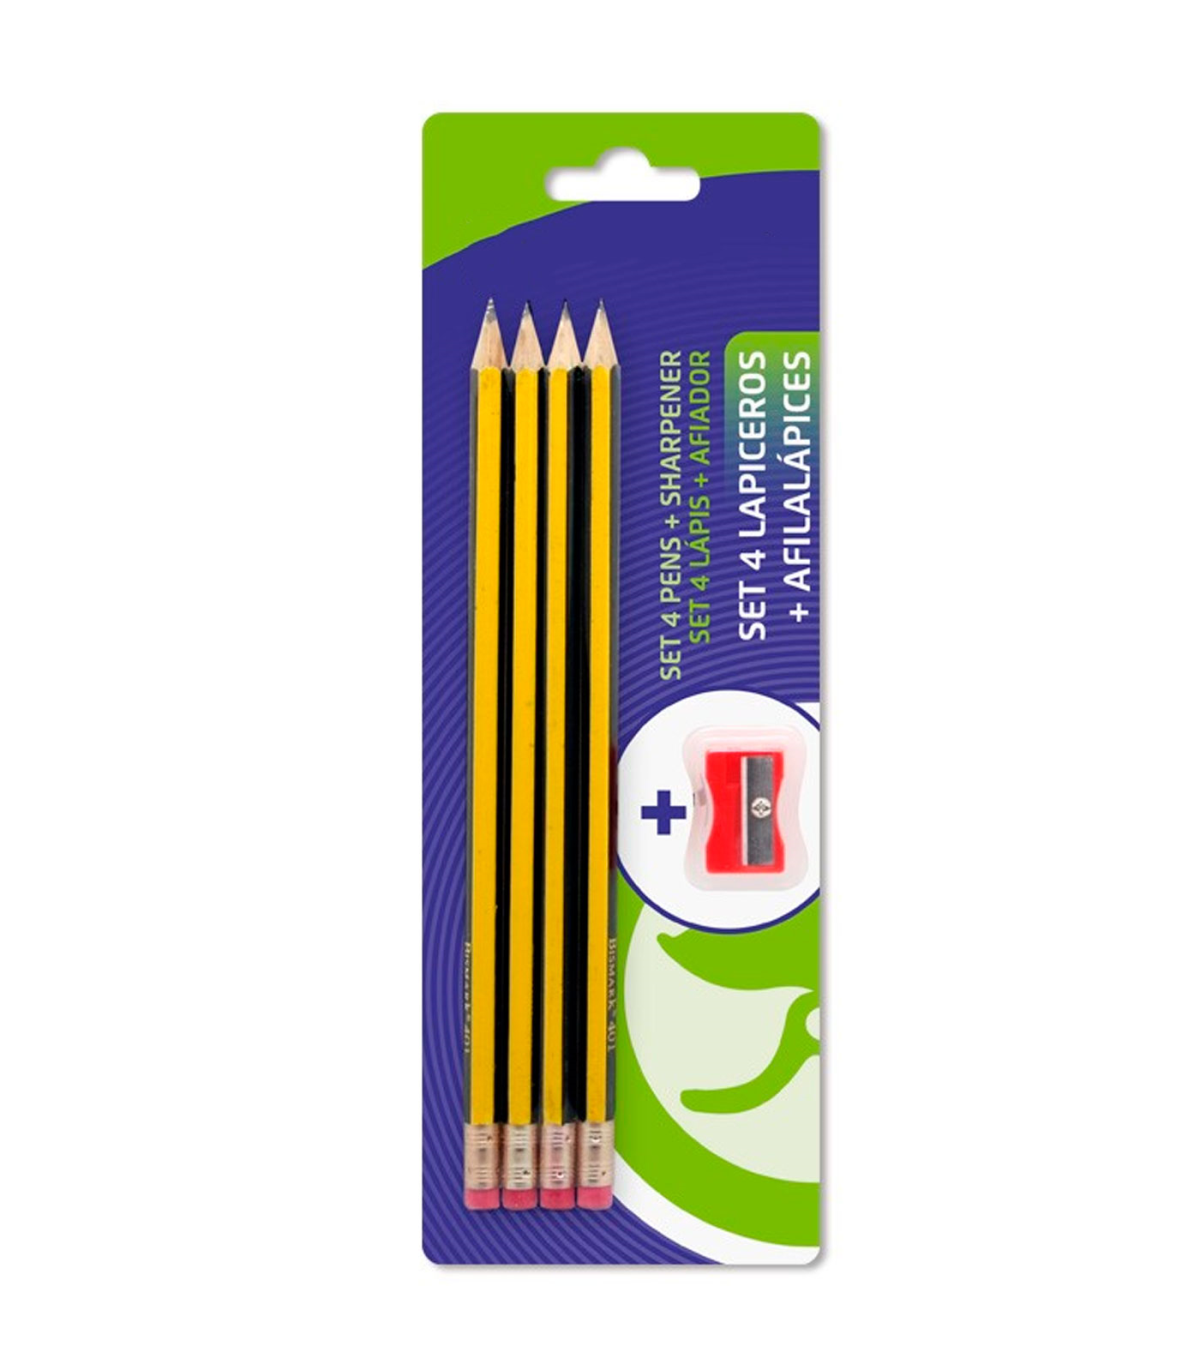 Tradineur - Set de 4 lápices HB con goma de borrar y afilalápiz, grafito,  escritura suave y precisa, material escolar, oficinas